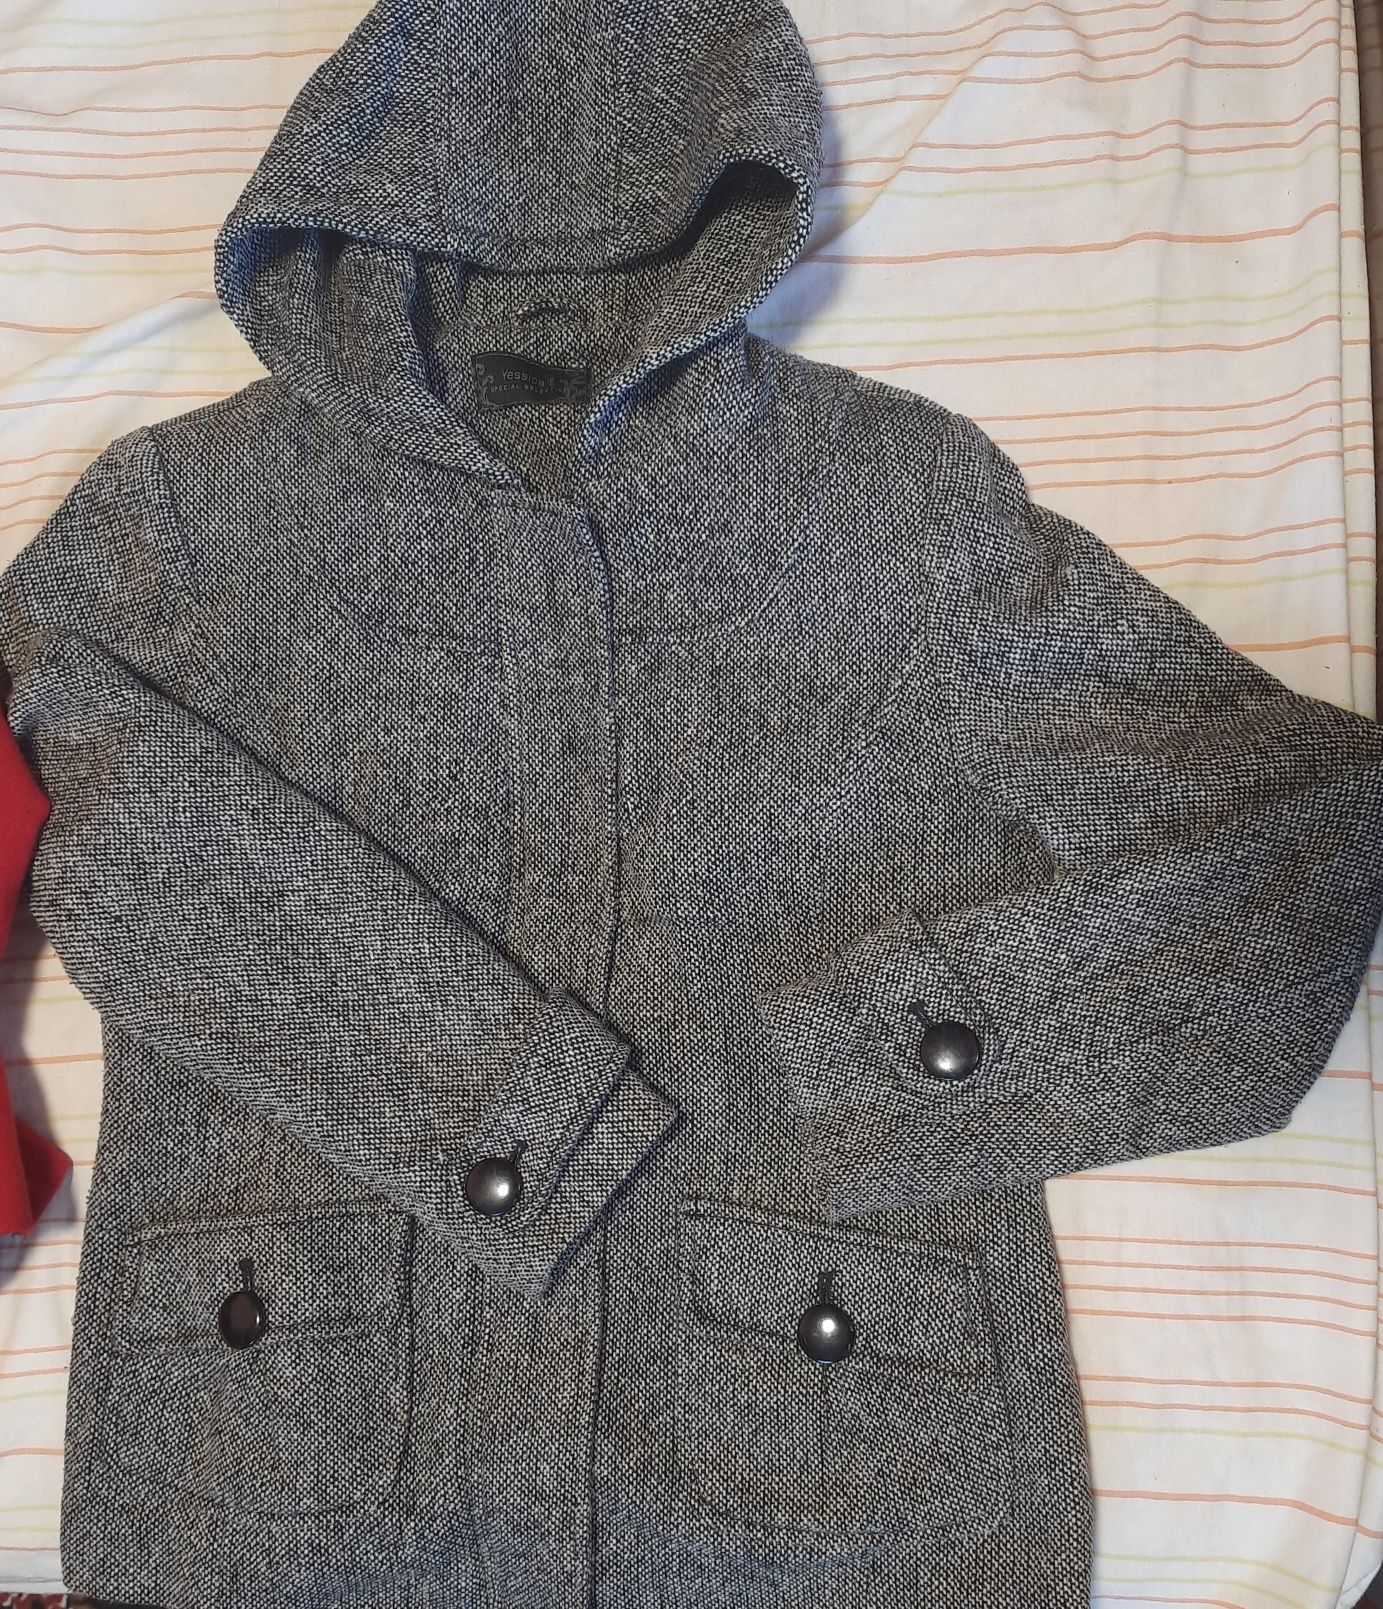 Демисезонная куртка, пальто, полупальто, пиджак 46-48 размер.